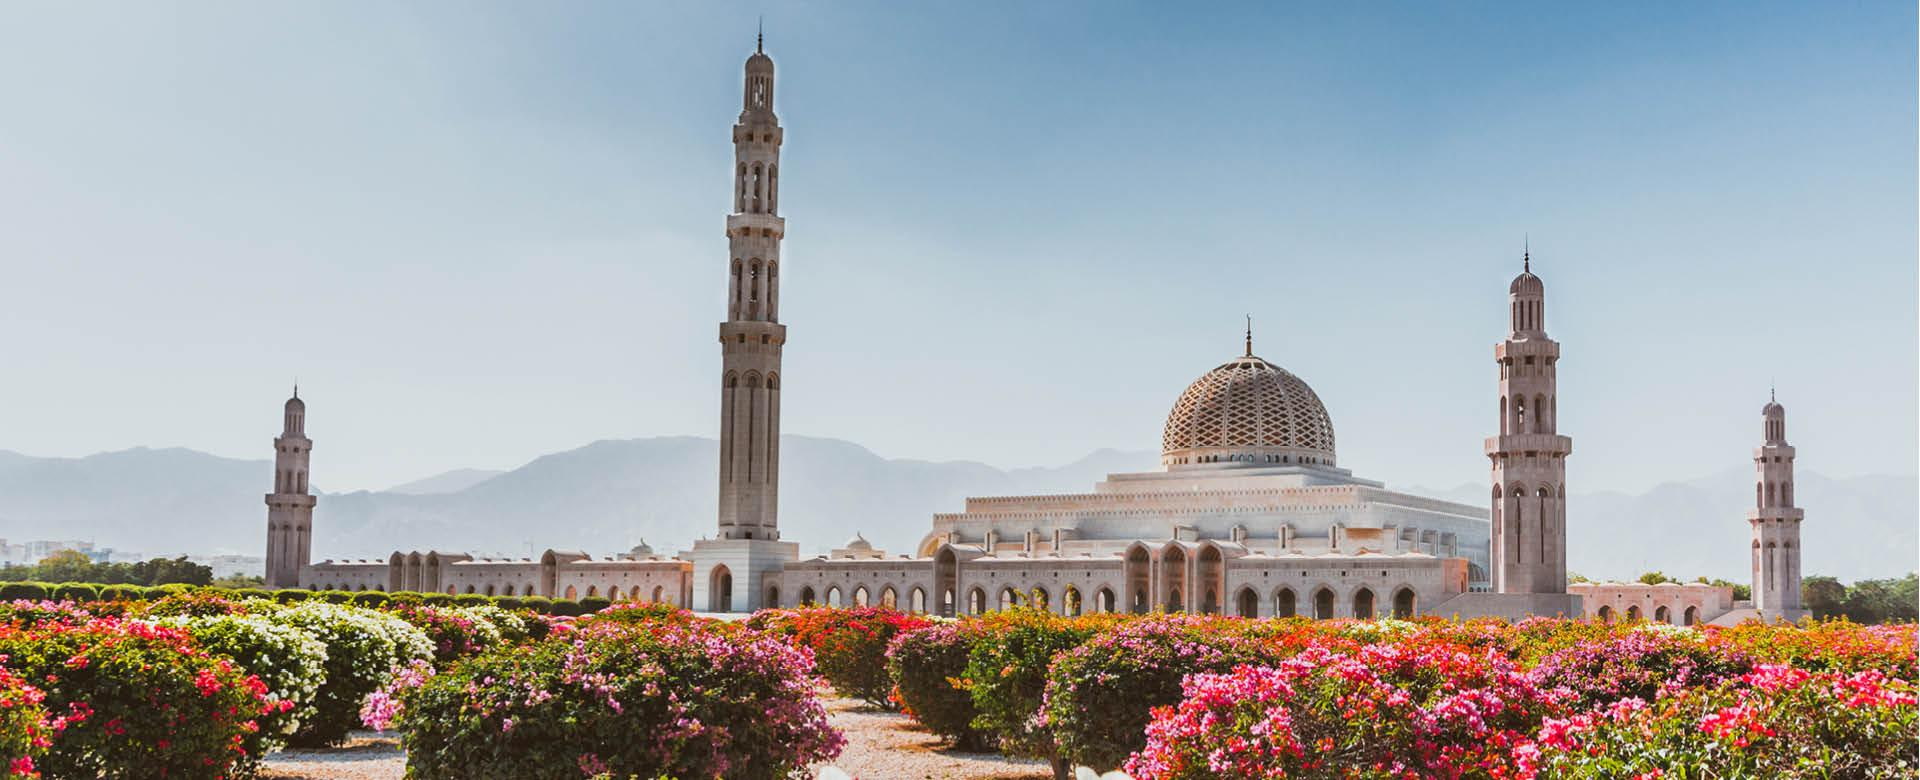 Morgenblick auf die Sultan Qaboos Grand Moschee in Muscat, Oman. Blühende Büsche im Vordergrund, Berge hinter der Moschee